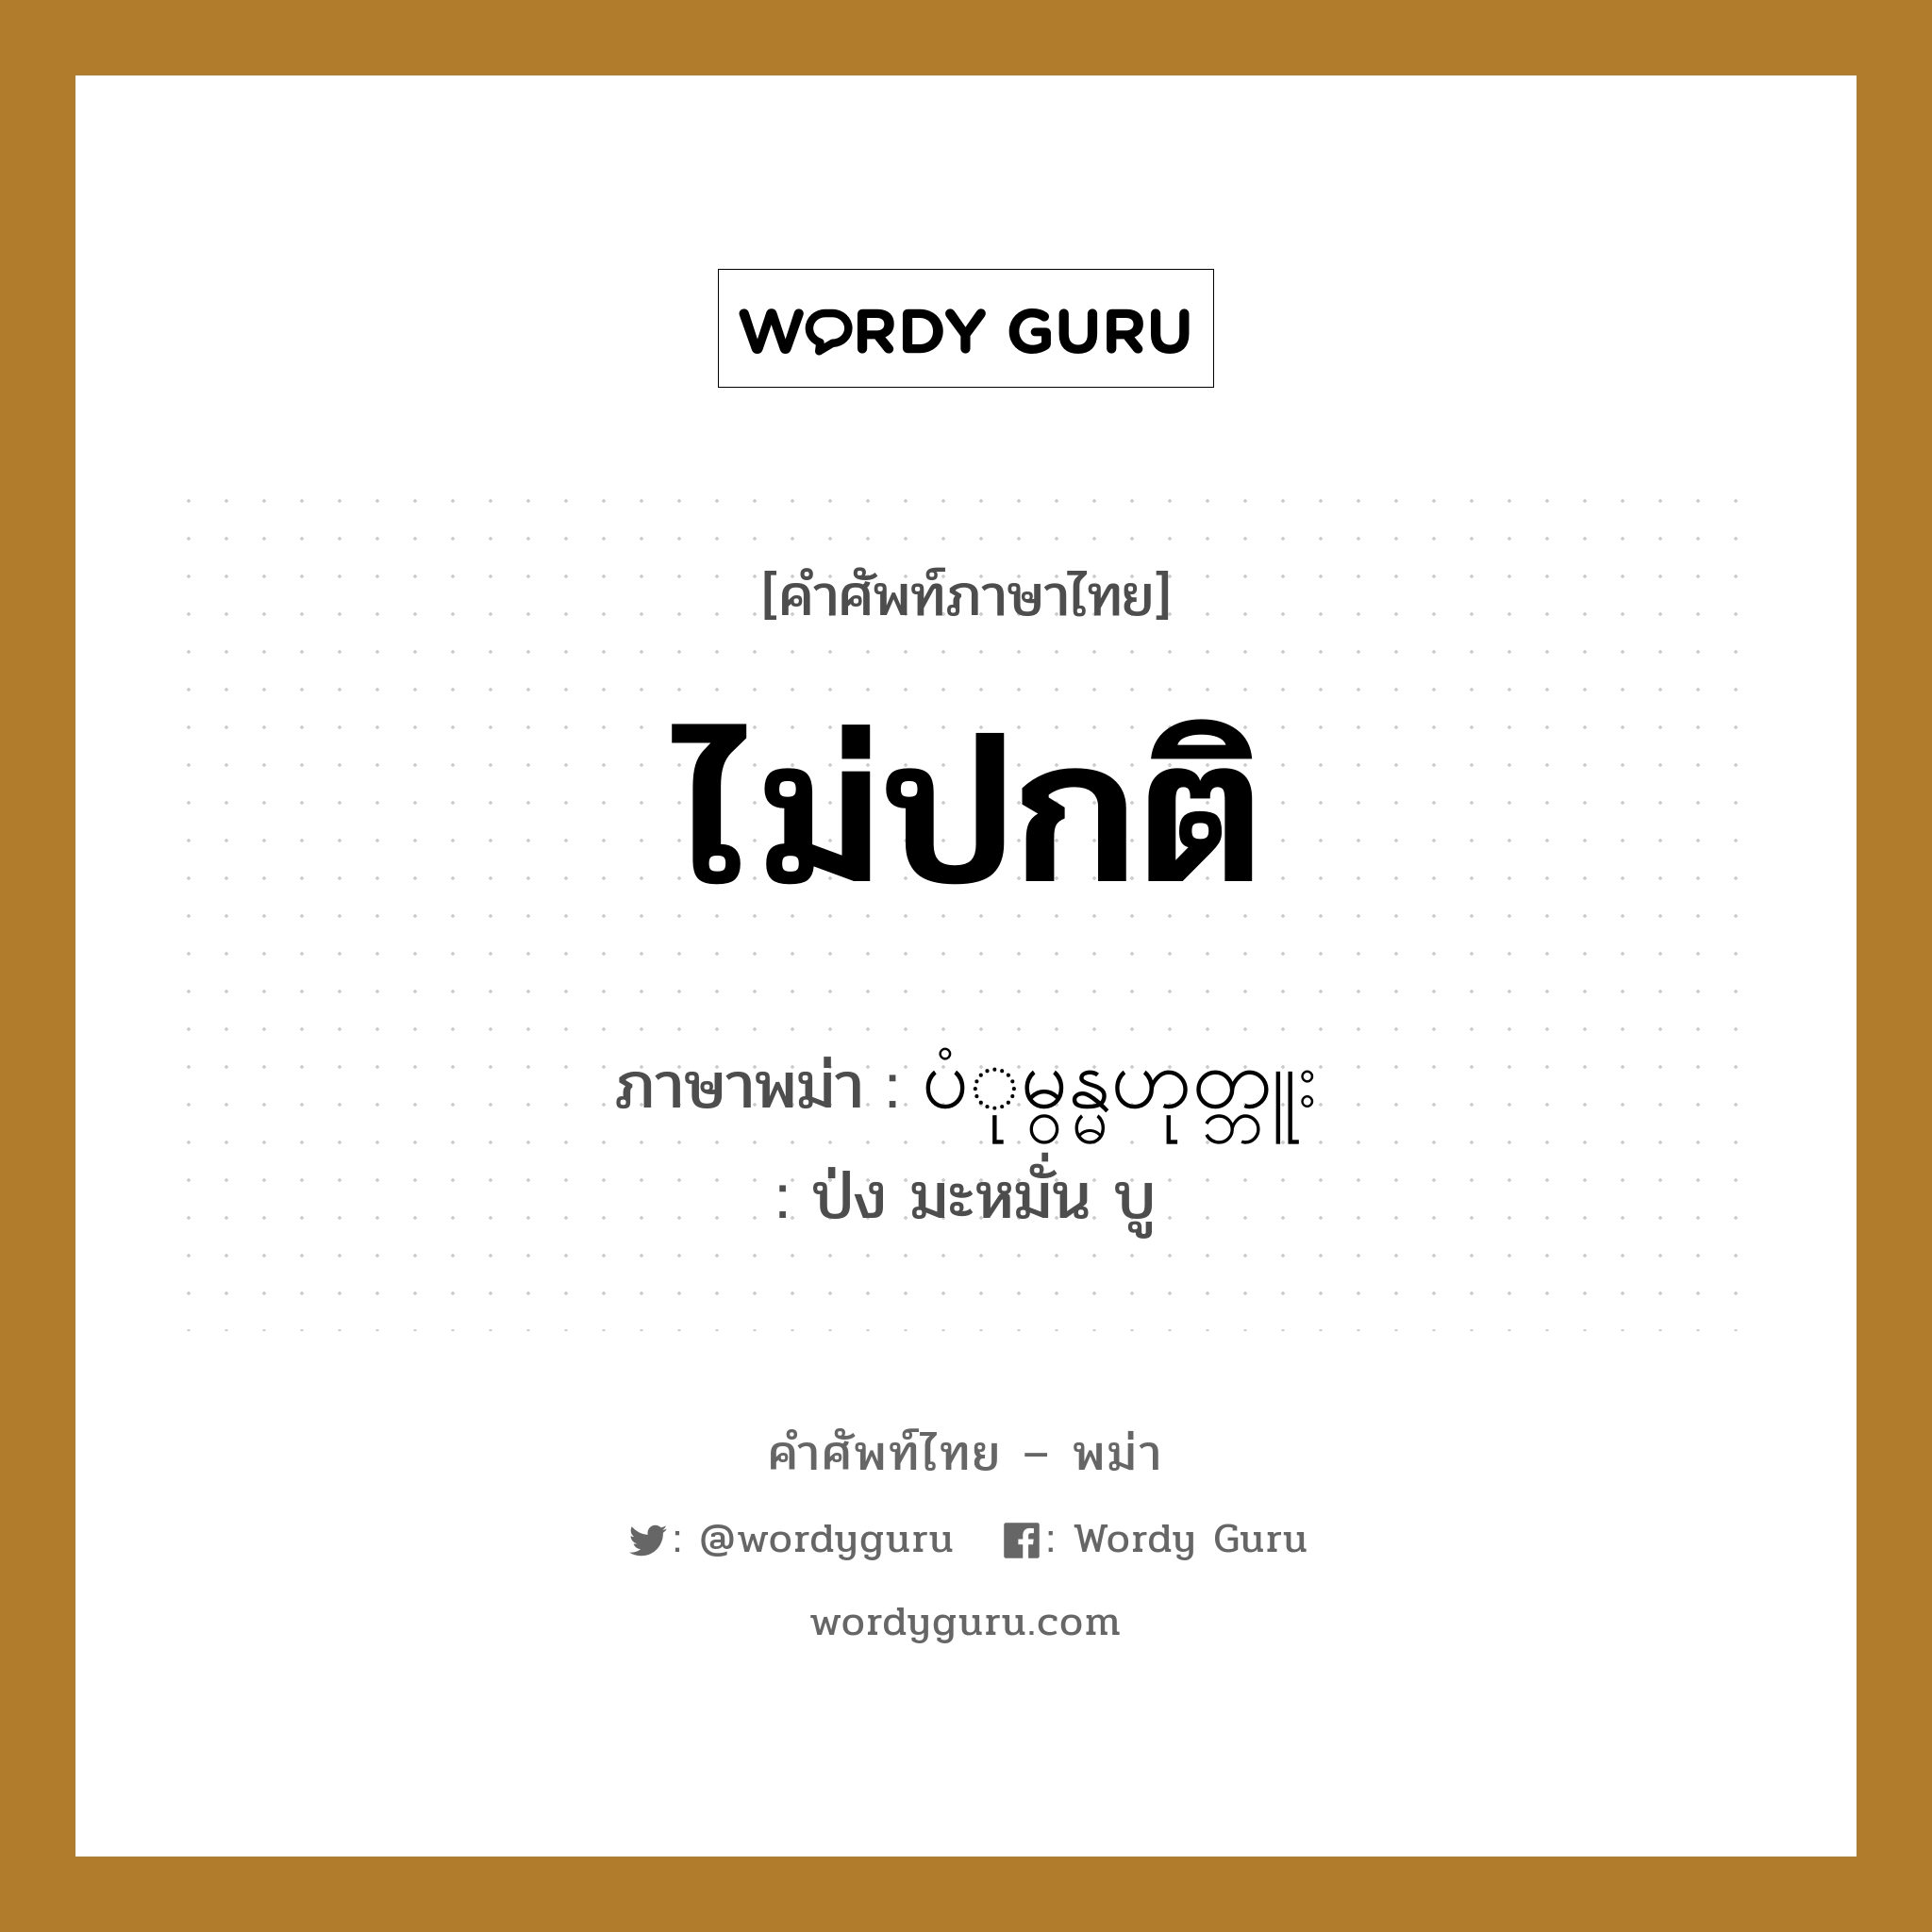 ไม่ปกติ ภาษาพม่าคืออะไร, คำศัพท์ภาษาไทย - พม่า ไม่ปกติ ภาษาพม่า ပံုမွန္မဟုတ္ဘူး หมวด หมวดโรคและยารักษา ป่ง มะหมั่น บู หมวด หมวดโรคและยารักษา